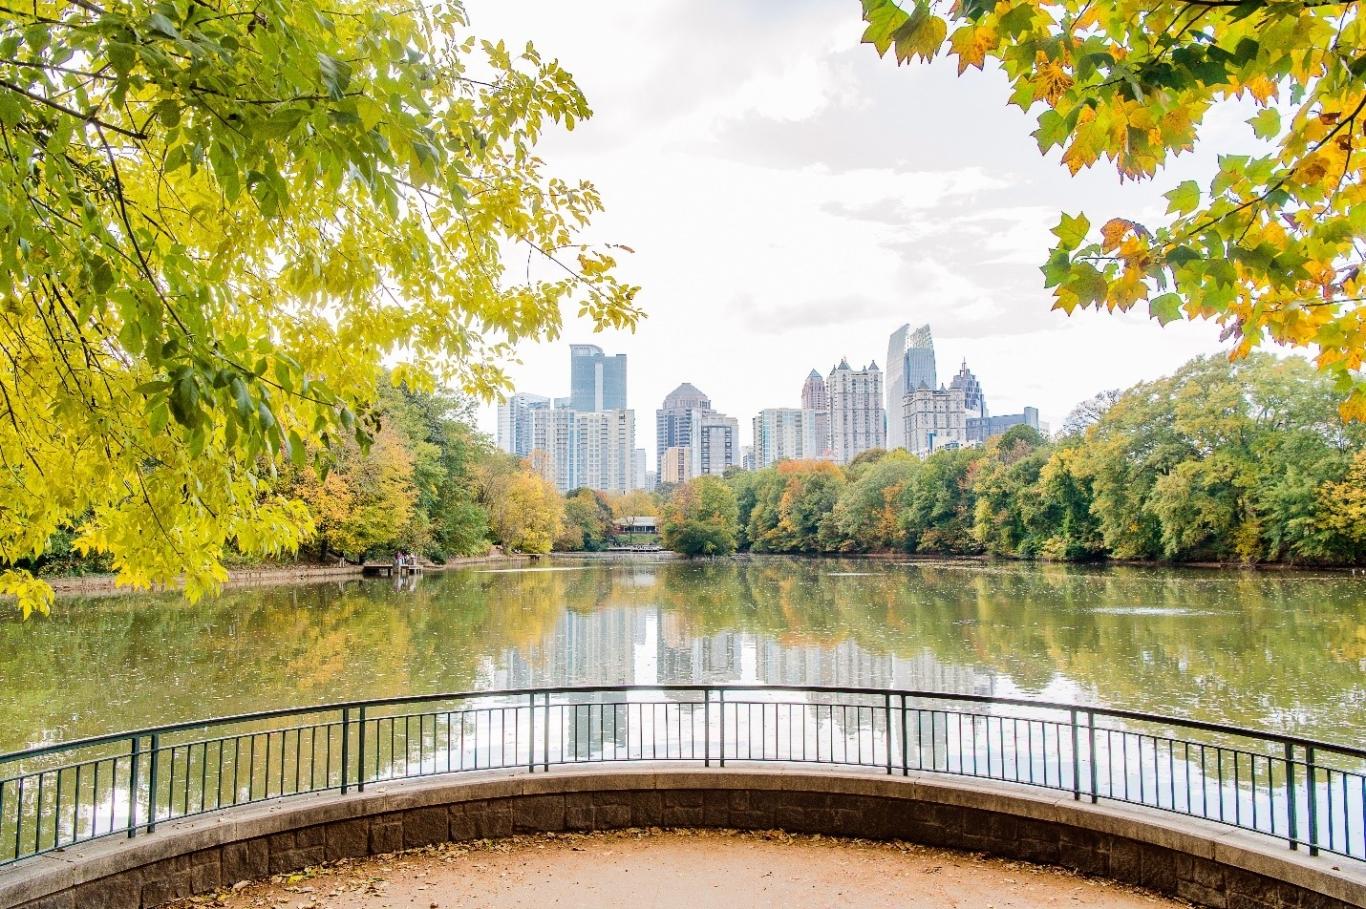 Bridge view of Atlanta